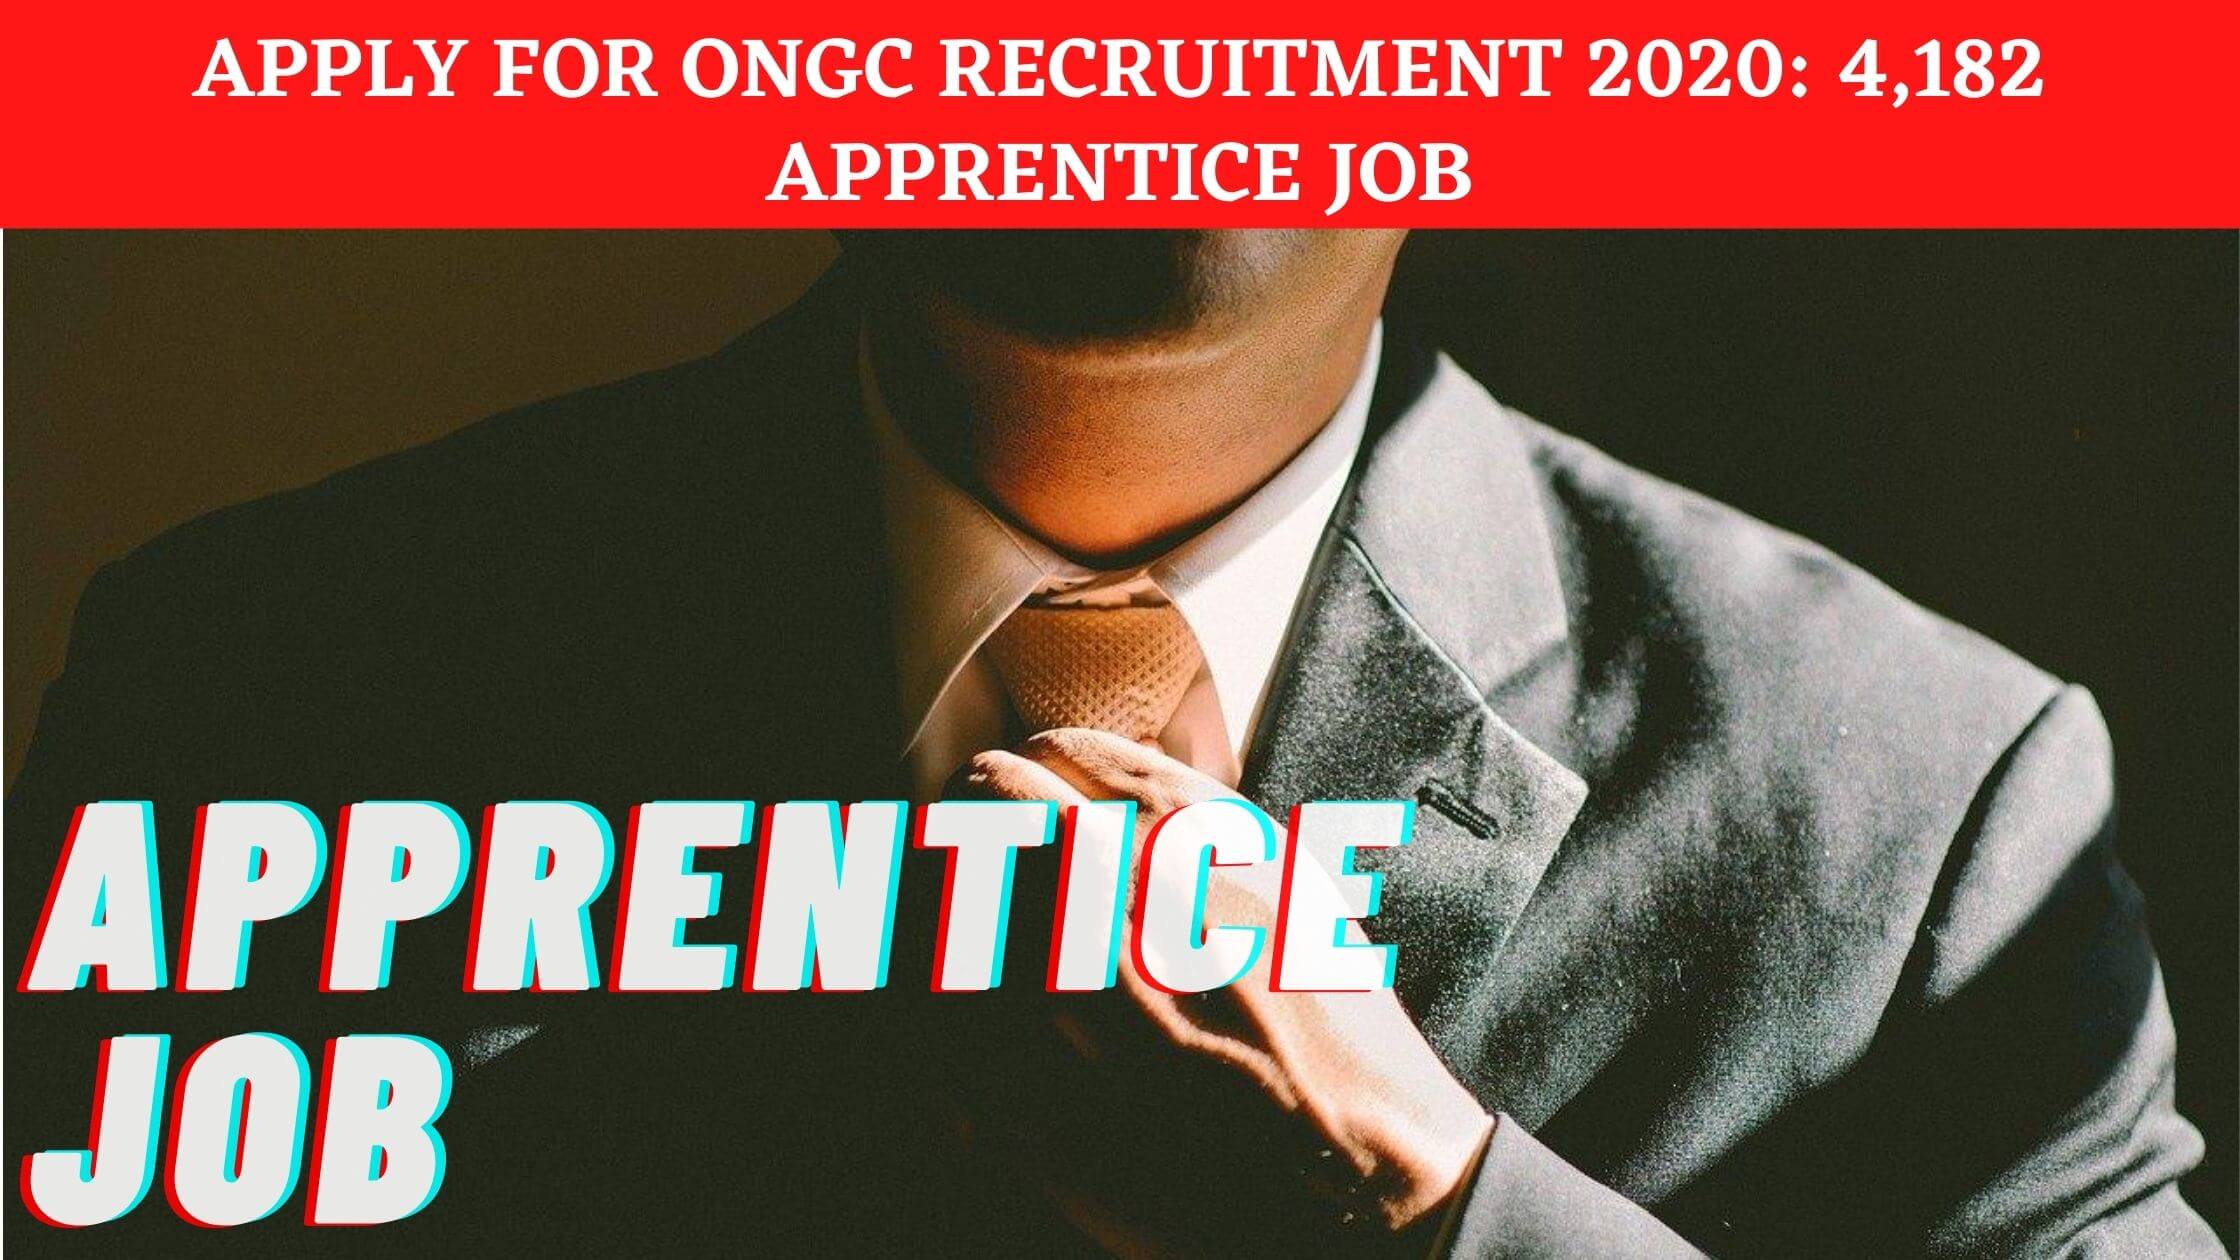 Apply for ONGC recruitment 2020: 4,182 apprentice job